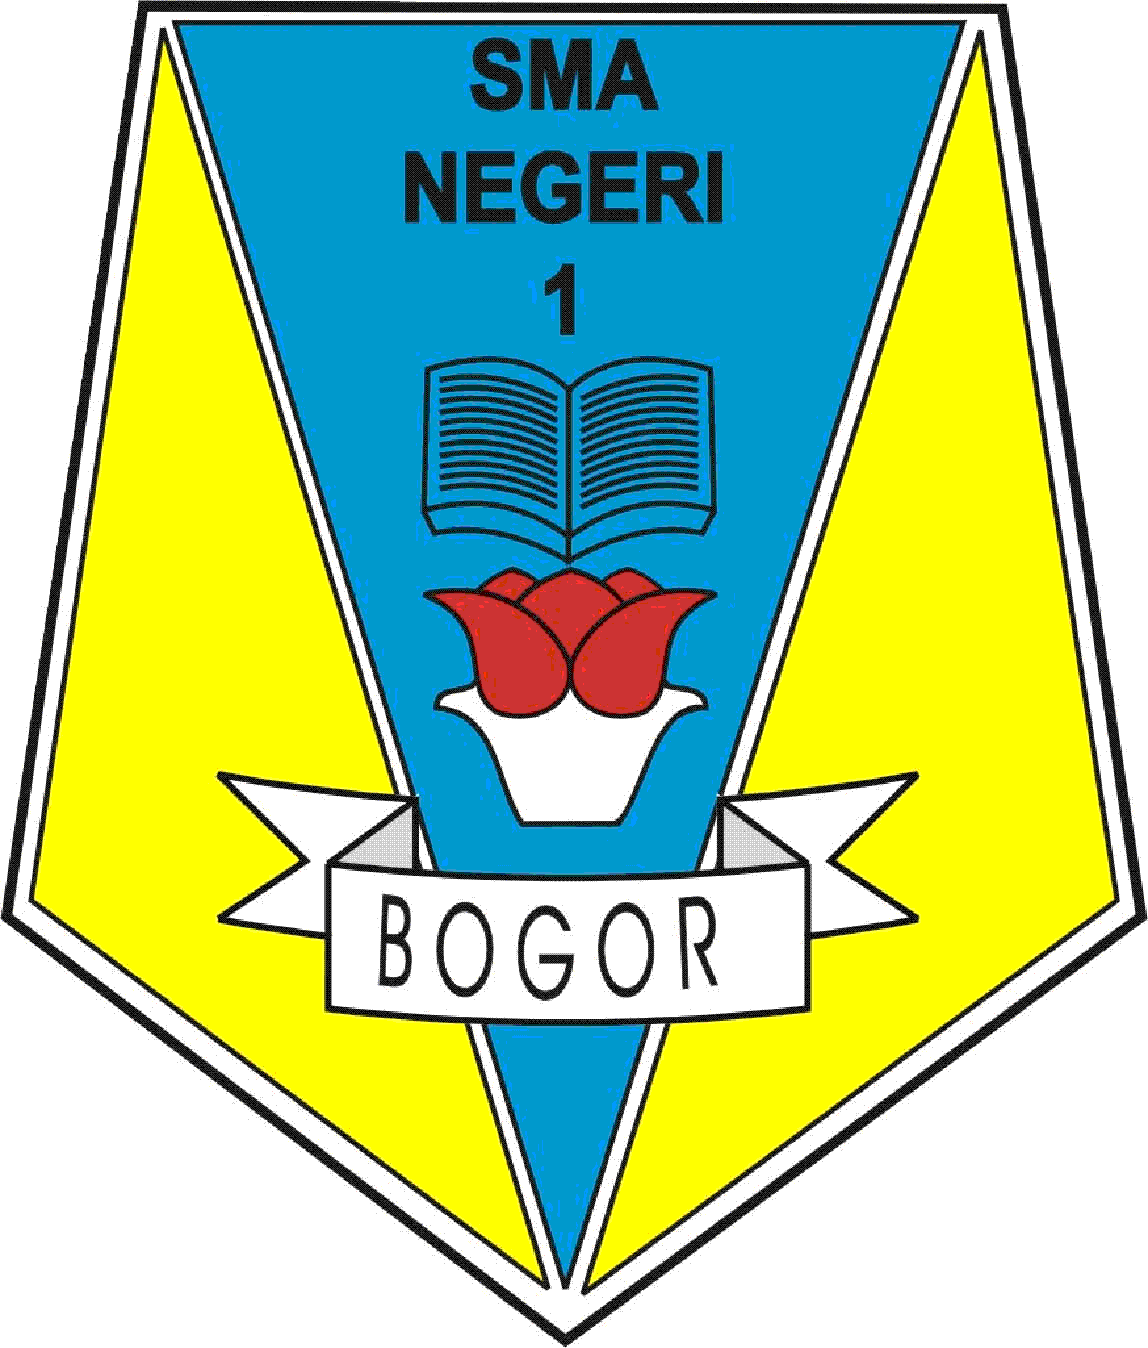 SMA Negeri 1 Bogor SMA Favorit Di Kota Bogor Bewara News